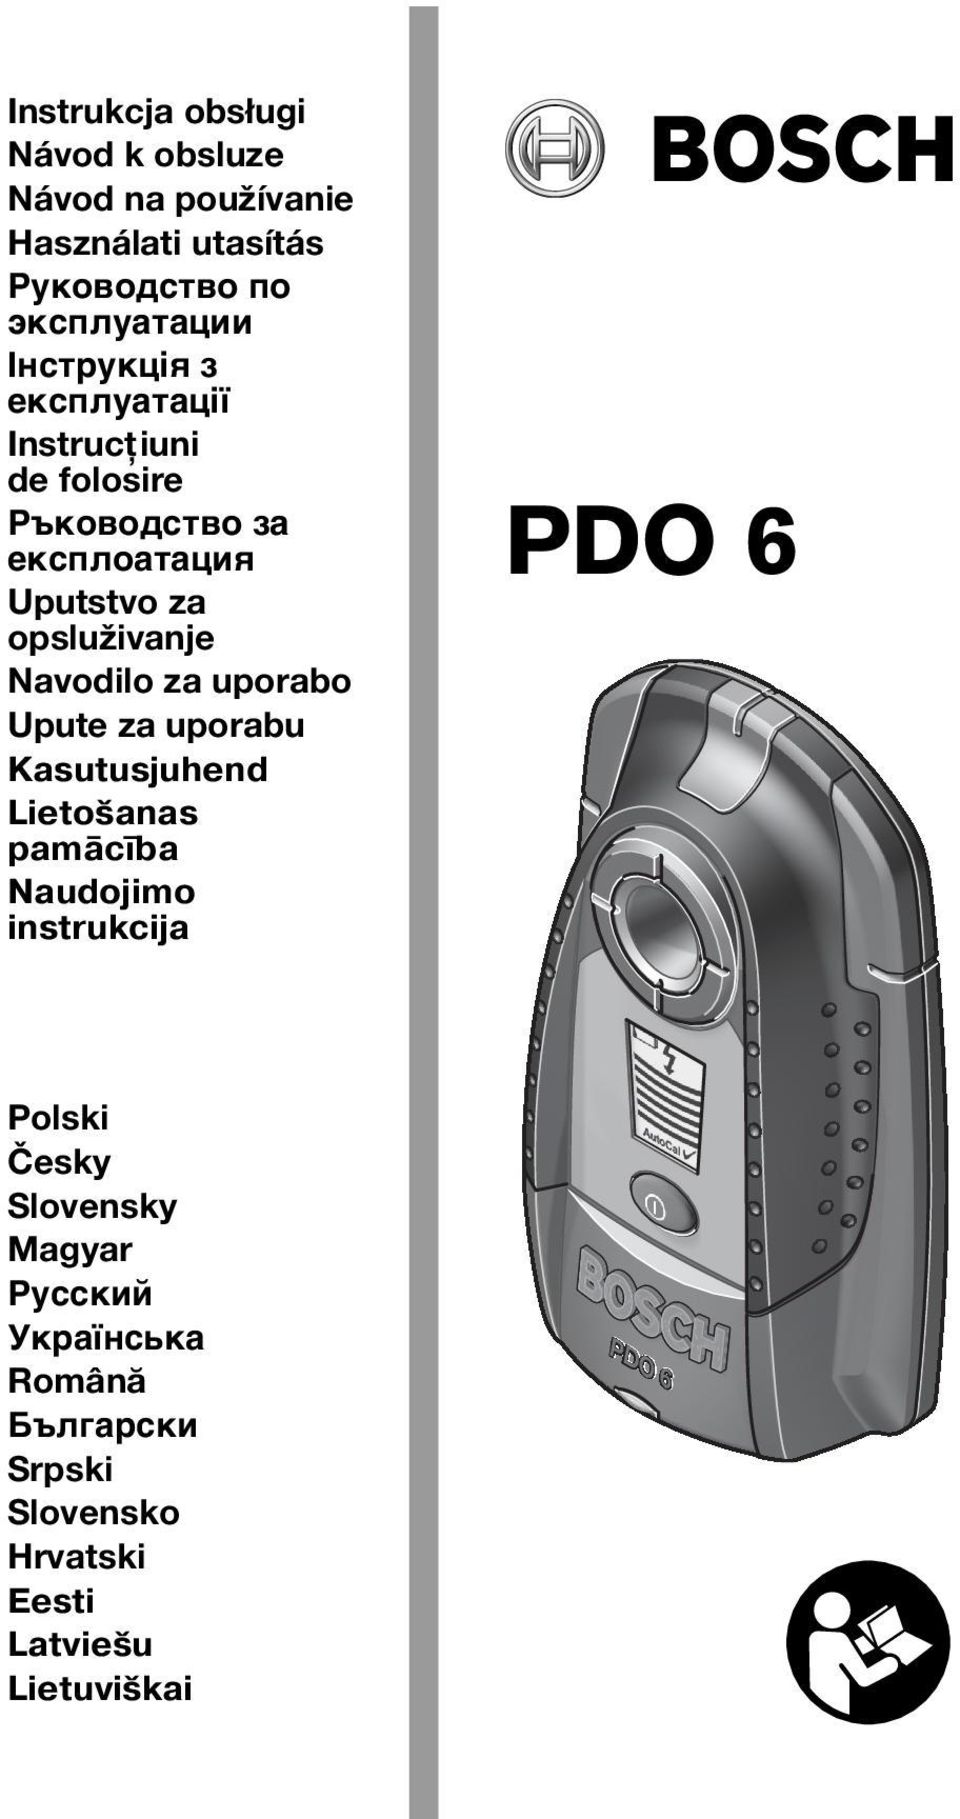 Navodilo za uporabo Upute za uporabu Kasutusjuhend Lietošanas pamācība Naudojimo instrukcija PDO 6 Polski